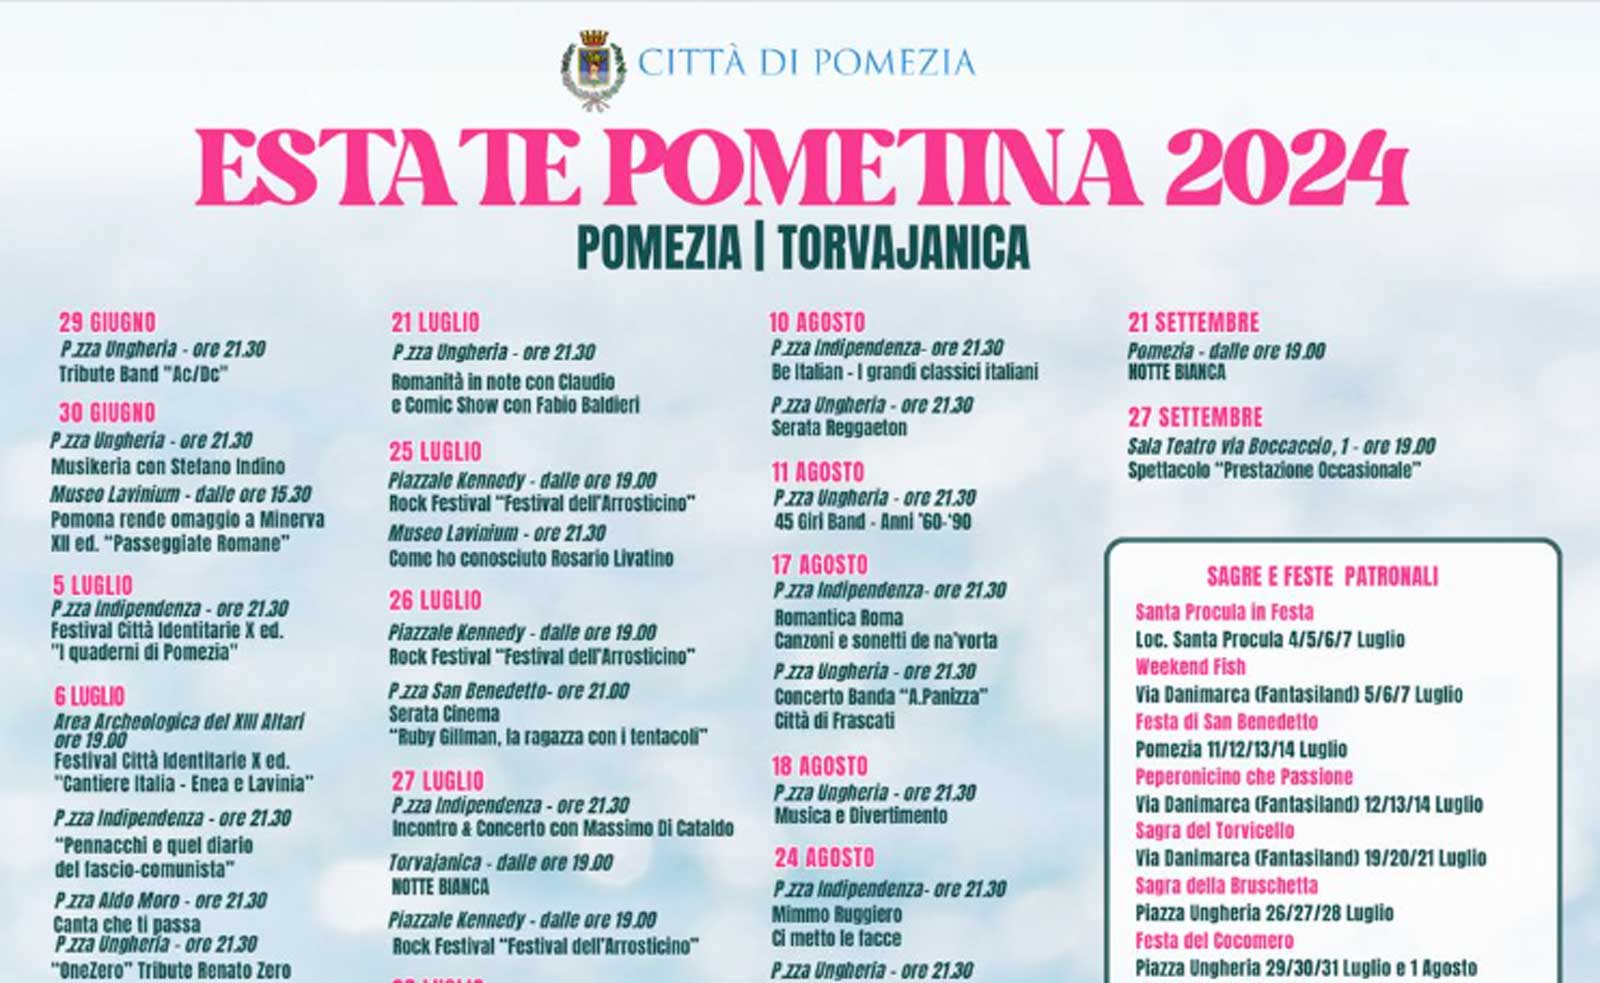 Il programma dell'Estate Pometina 2024, locandina del comune di Pomezia